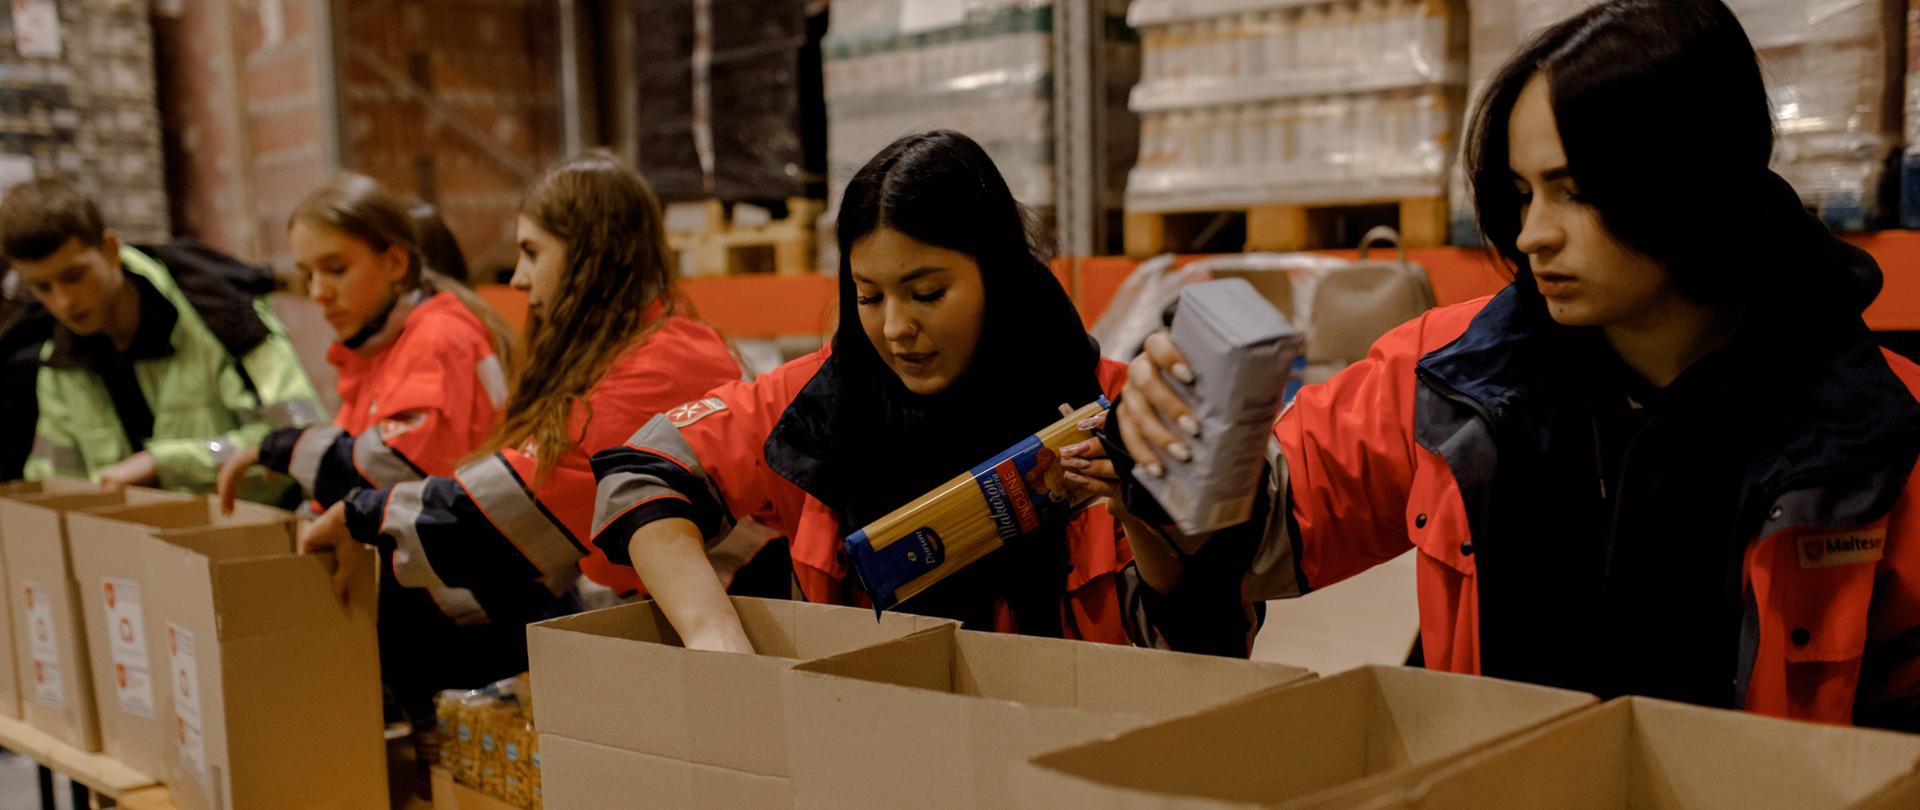 Na zdjęciu widać wolontariuszy znajdujących się w magazynie. Młodzież pakuje paczki żywnościowe dla potrzebujących. 